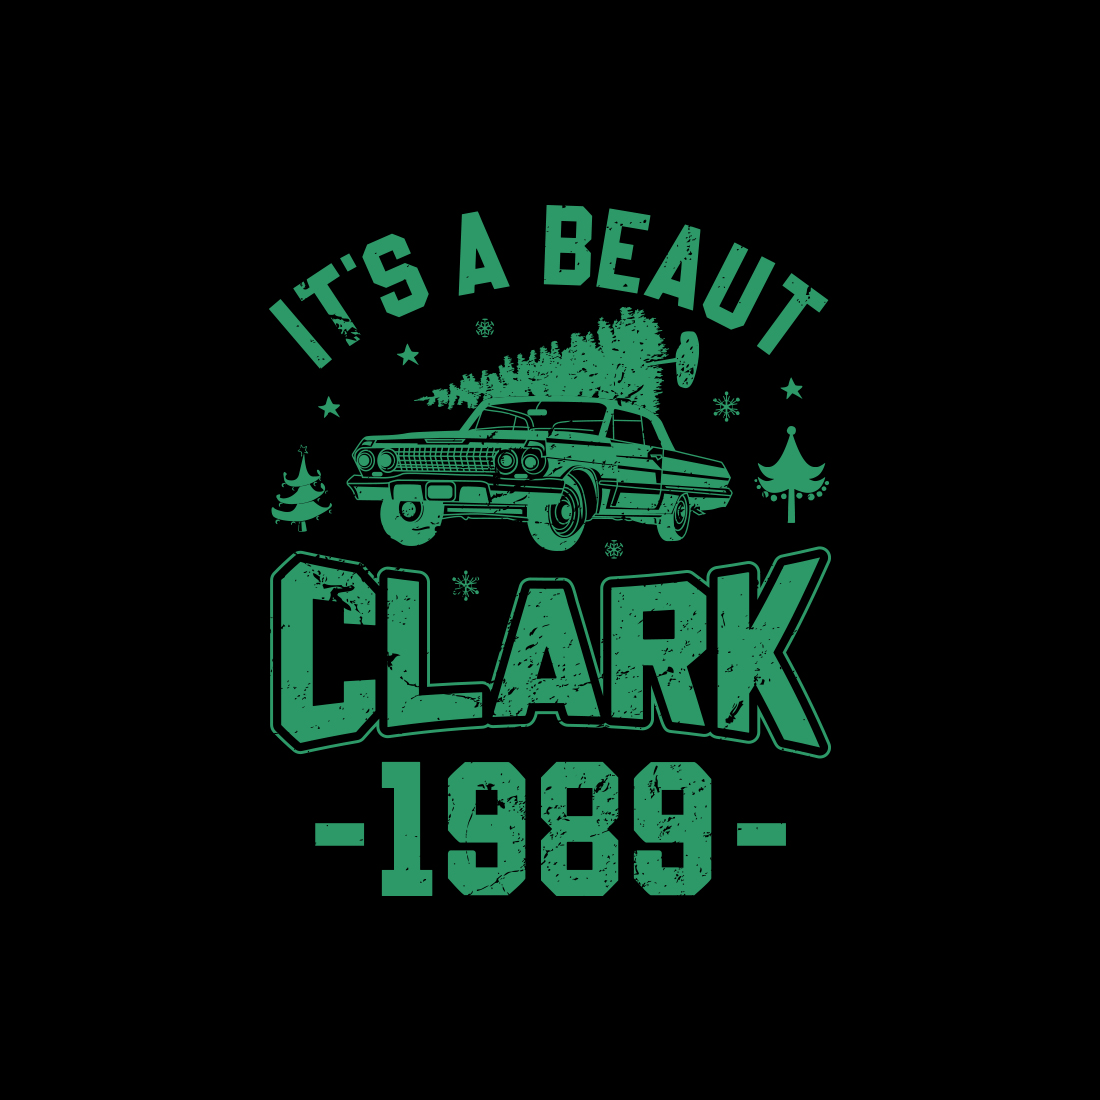 It's a beaut clark 1989 T-shirt design preview image.